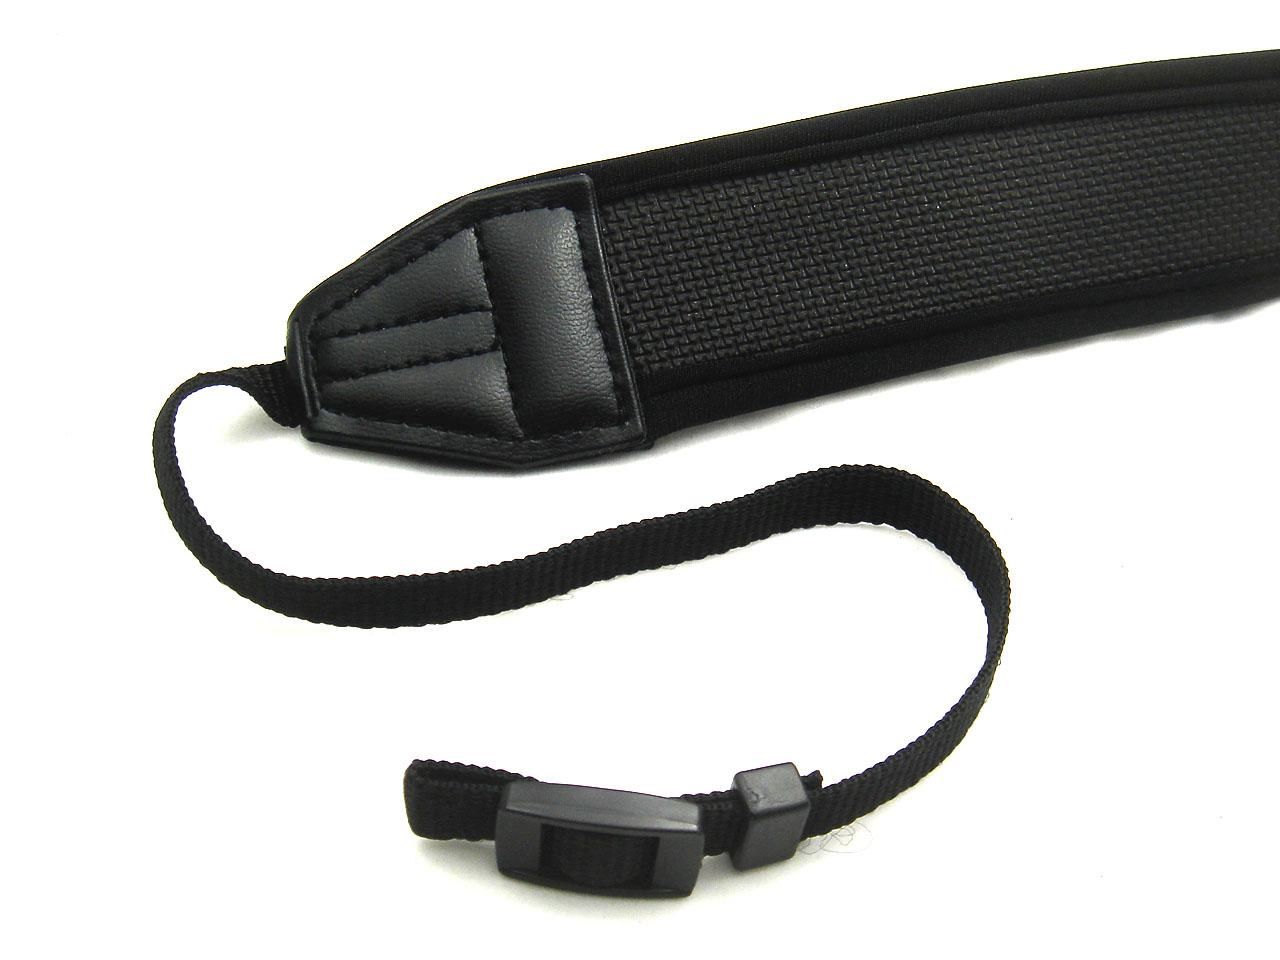 Kamera-Schulter-Ansatz-Bügel-Gurt für all DSLR SLR weiche Neopren-Polsterung und Woven Nylon-Material